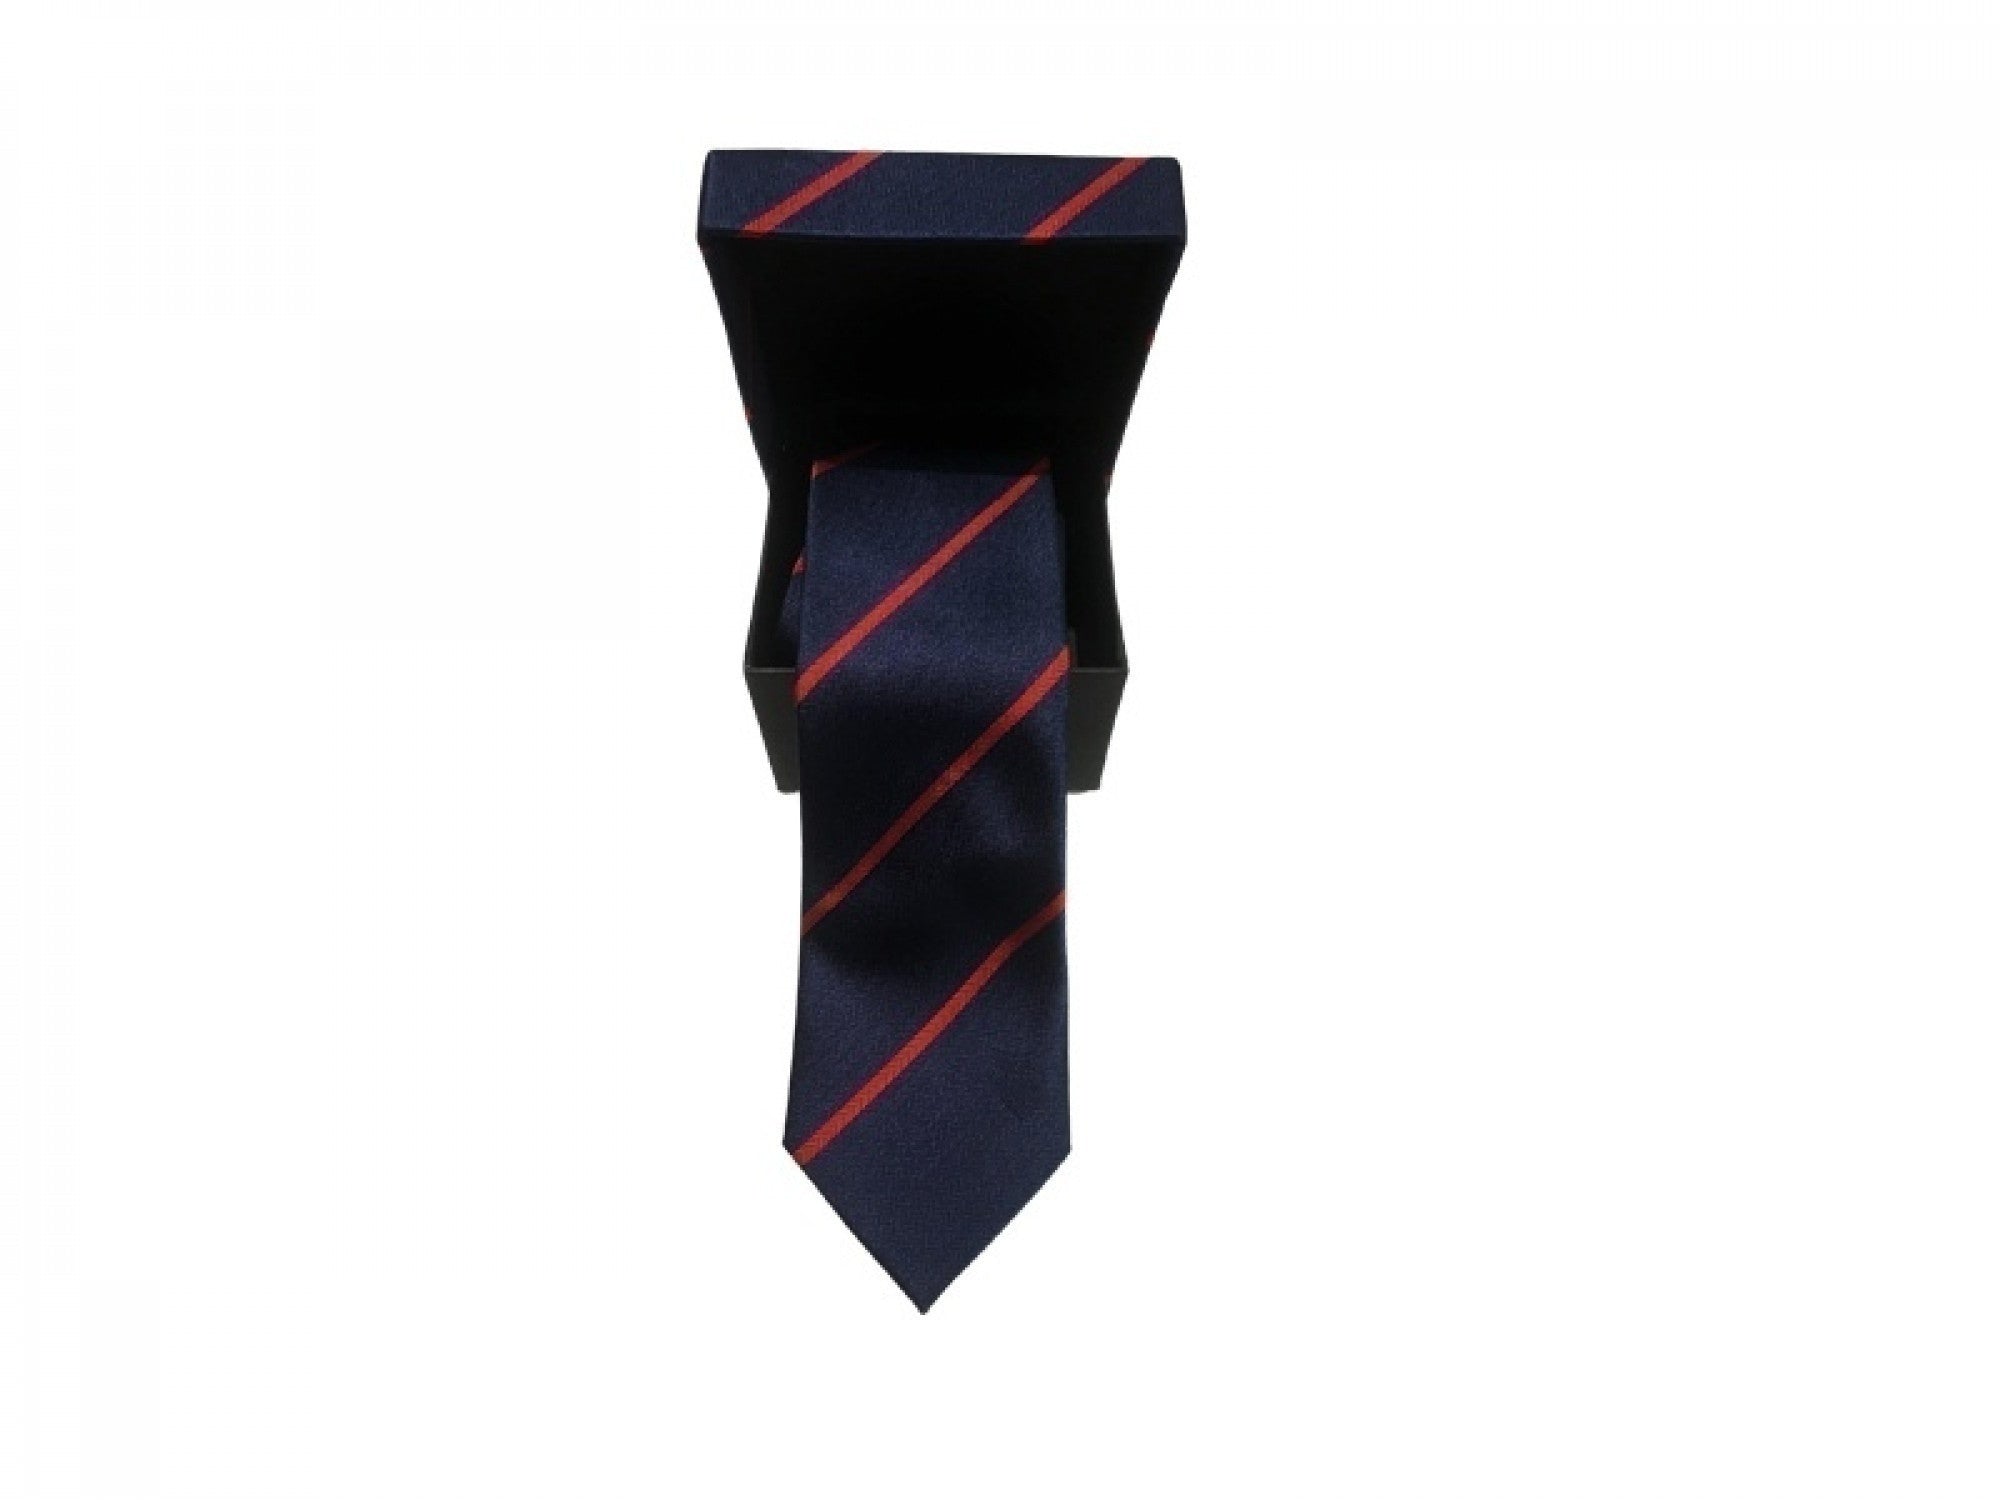 Krawatte navy mit roten Streifen